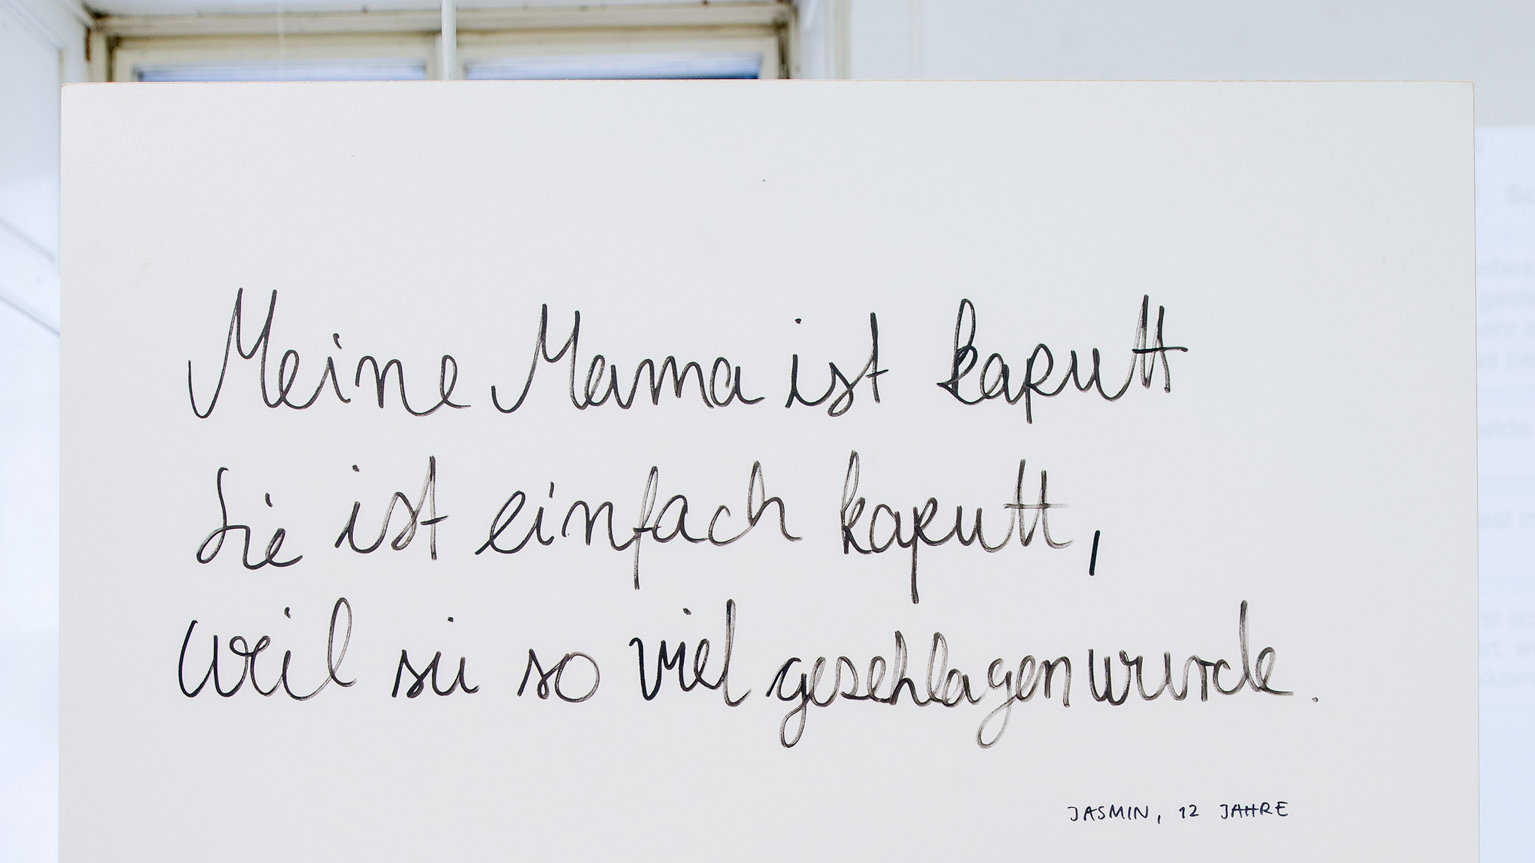 Brief von Jasmin, 12 Jahre: "Meine Mama ist kaputt, sie ist einfach kaputt, weil sie so oft geschlagen wurde"